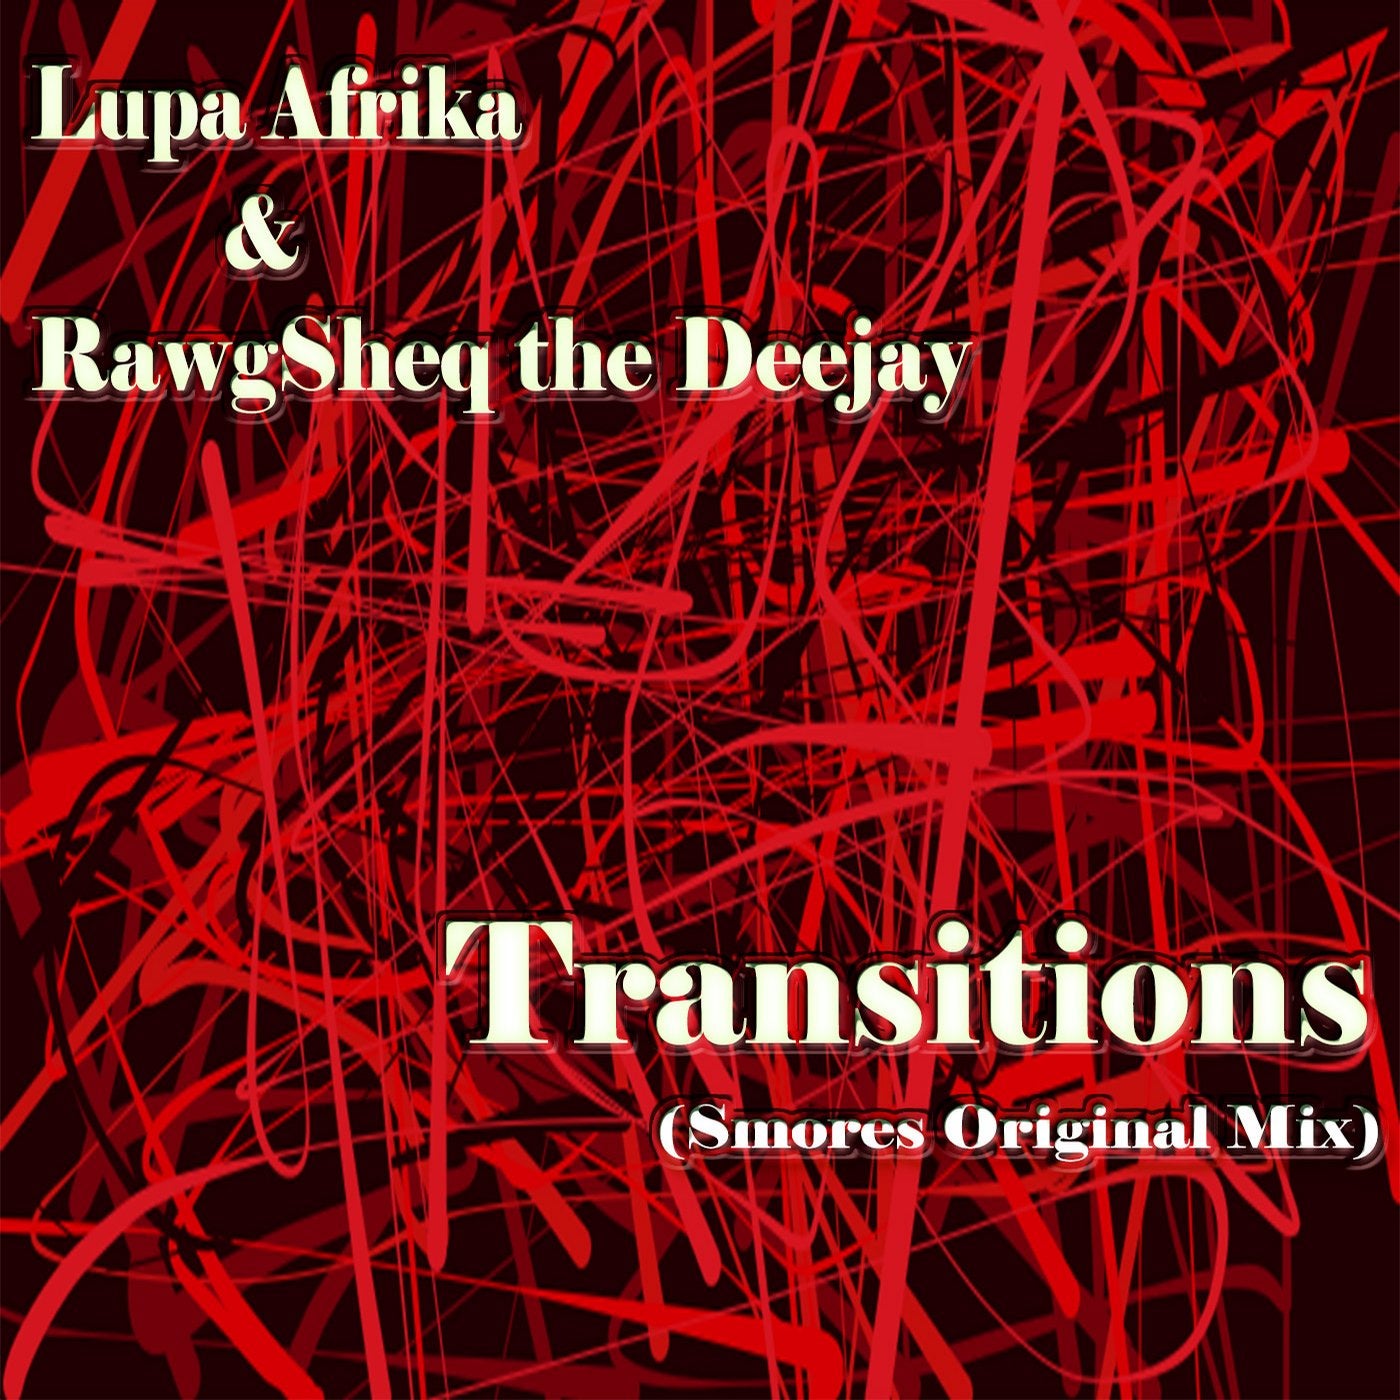 Transitions (Smores Original Mix)